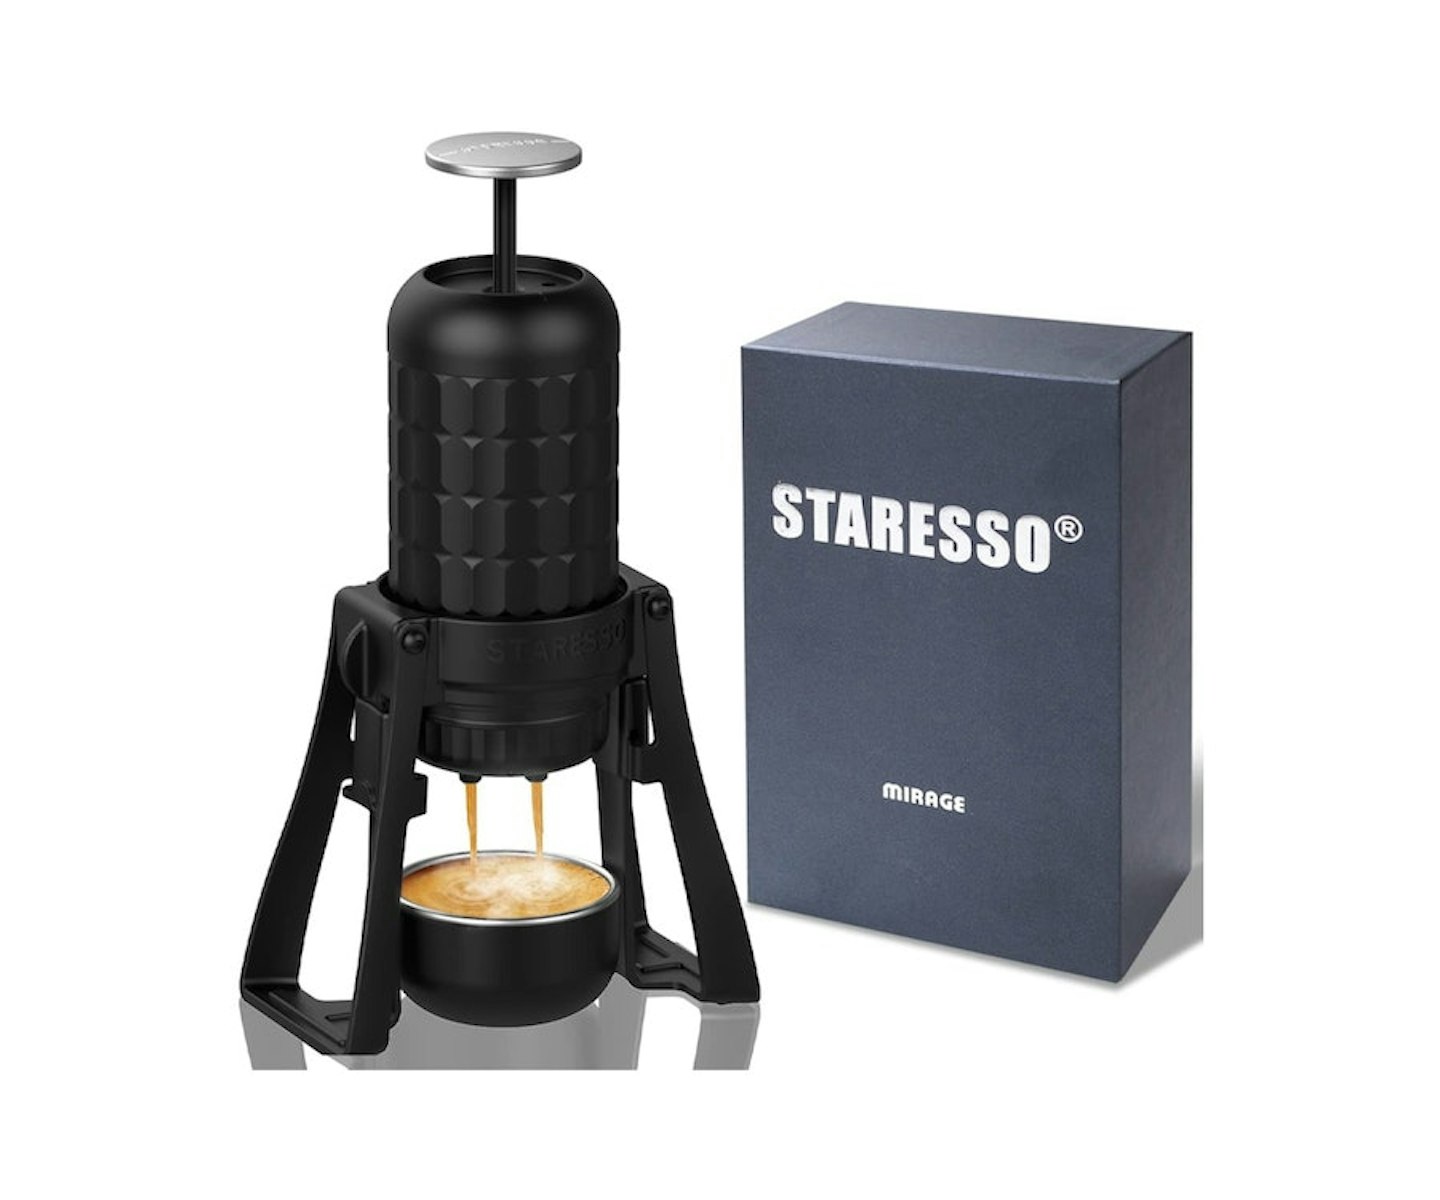 STARESSO Portable Espresso Maker